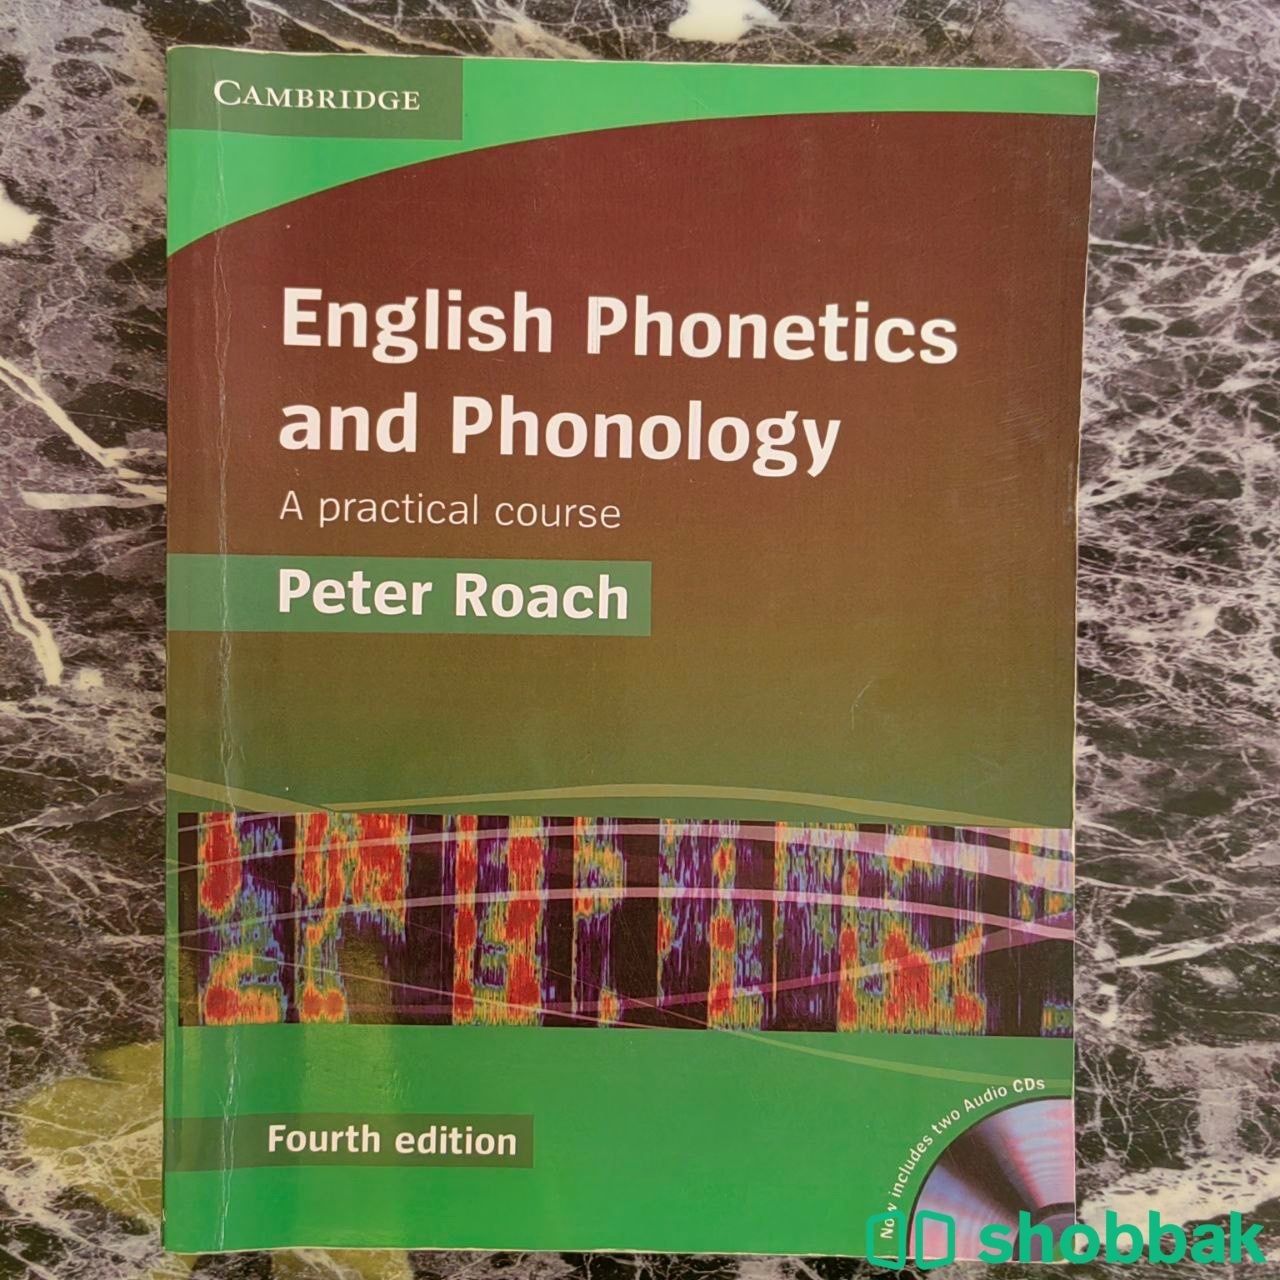 كتاب مقرر علم الصوتيات English phonetics & phonology بأقل الأسعار للطلاب شباك السعودية